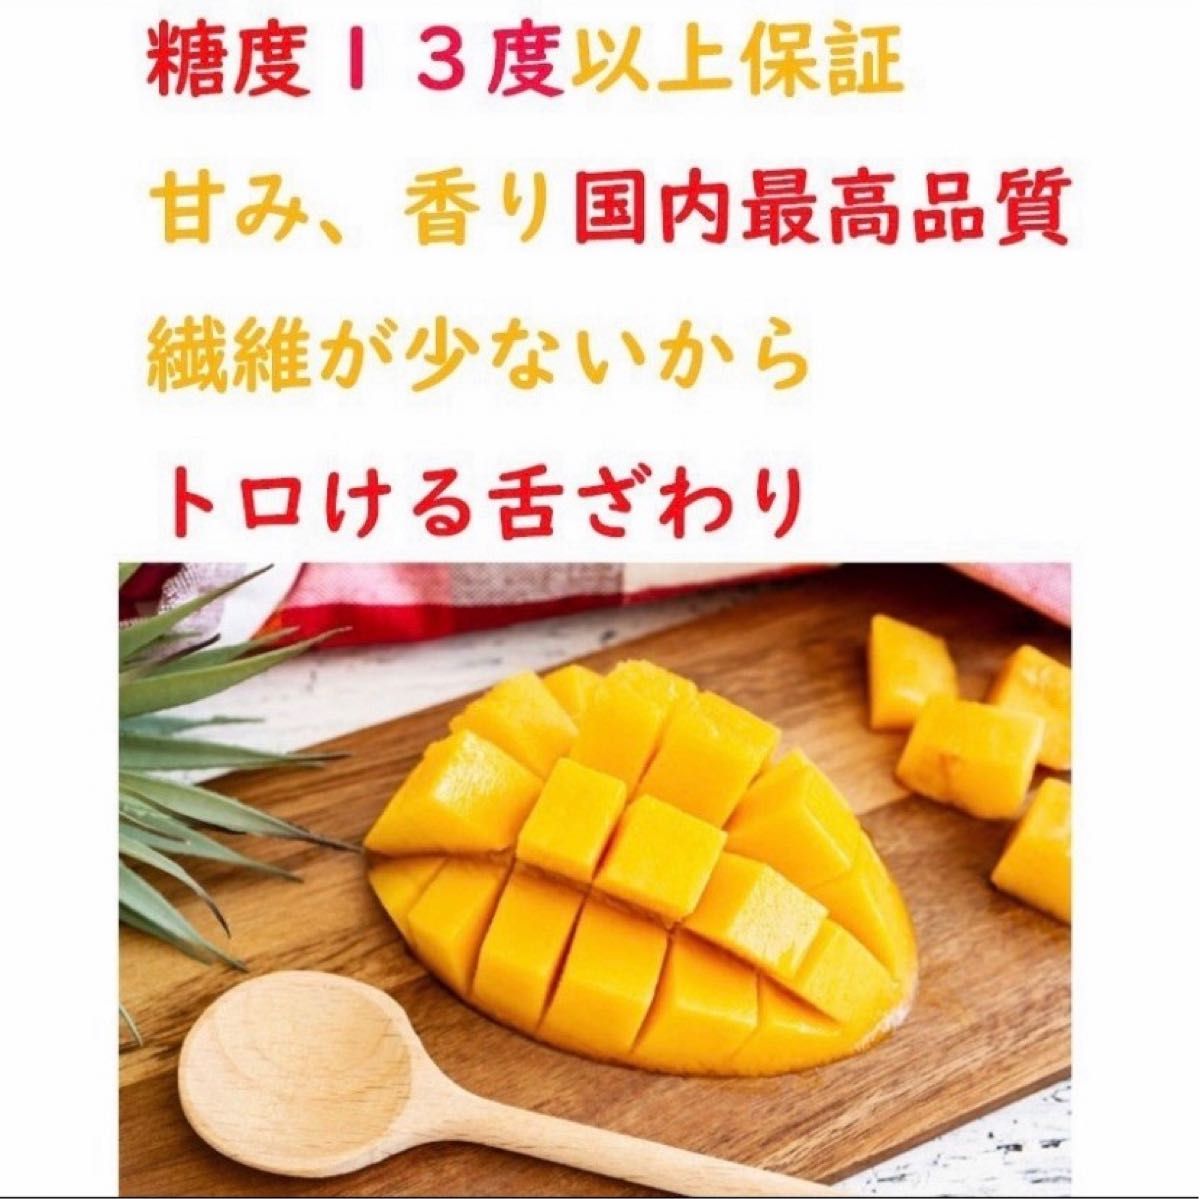 宮崎県産完熟マンゴーLサイズ6玉1.9kg以上